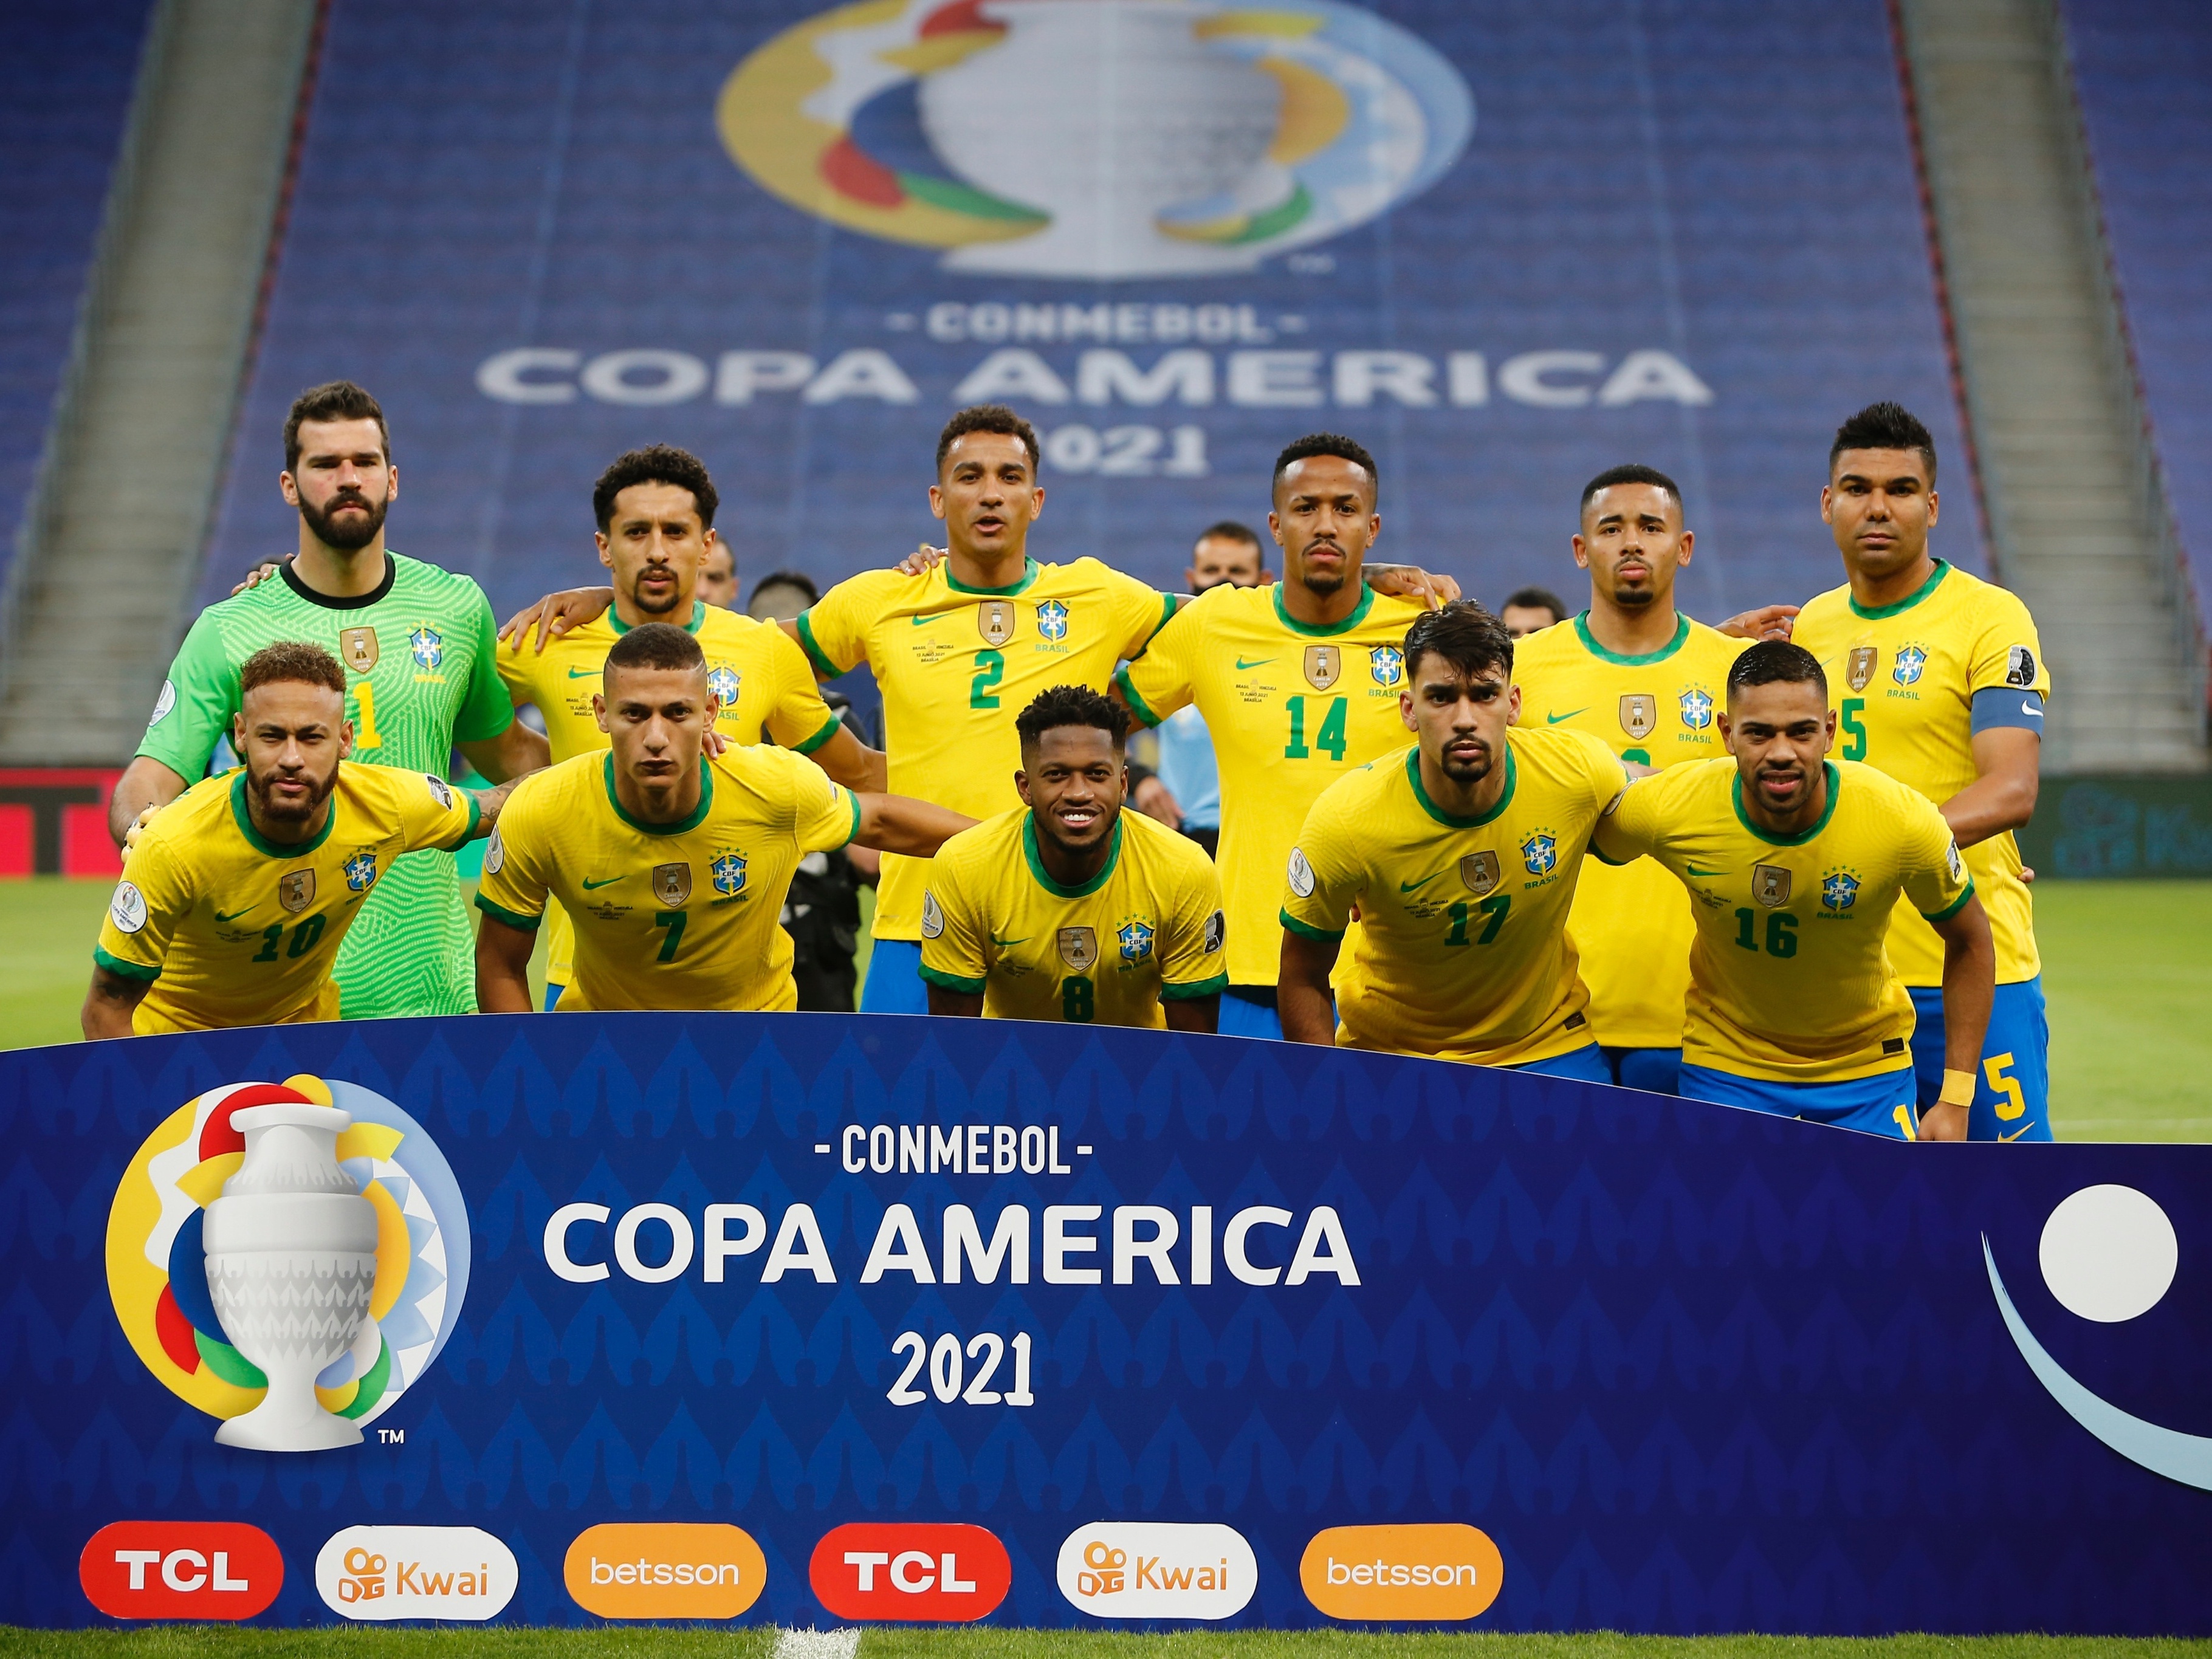 CBF pulou camisa 24 de jogador da seleção, e grupo pede ação da Fifa -  06/07/2021 - Esporte - Folha